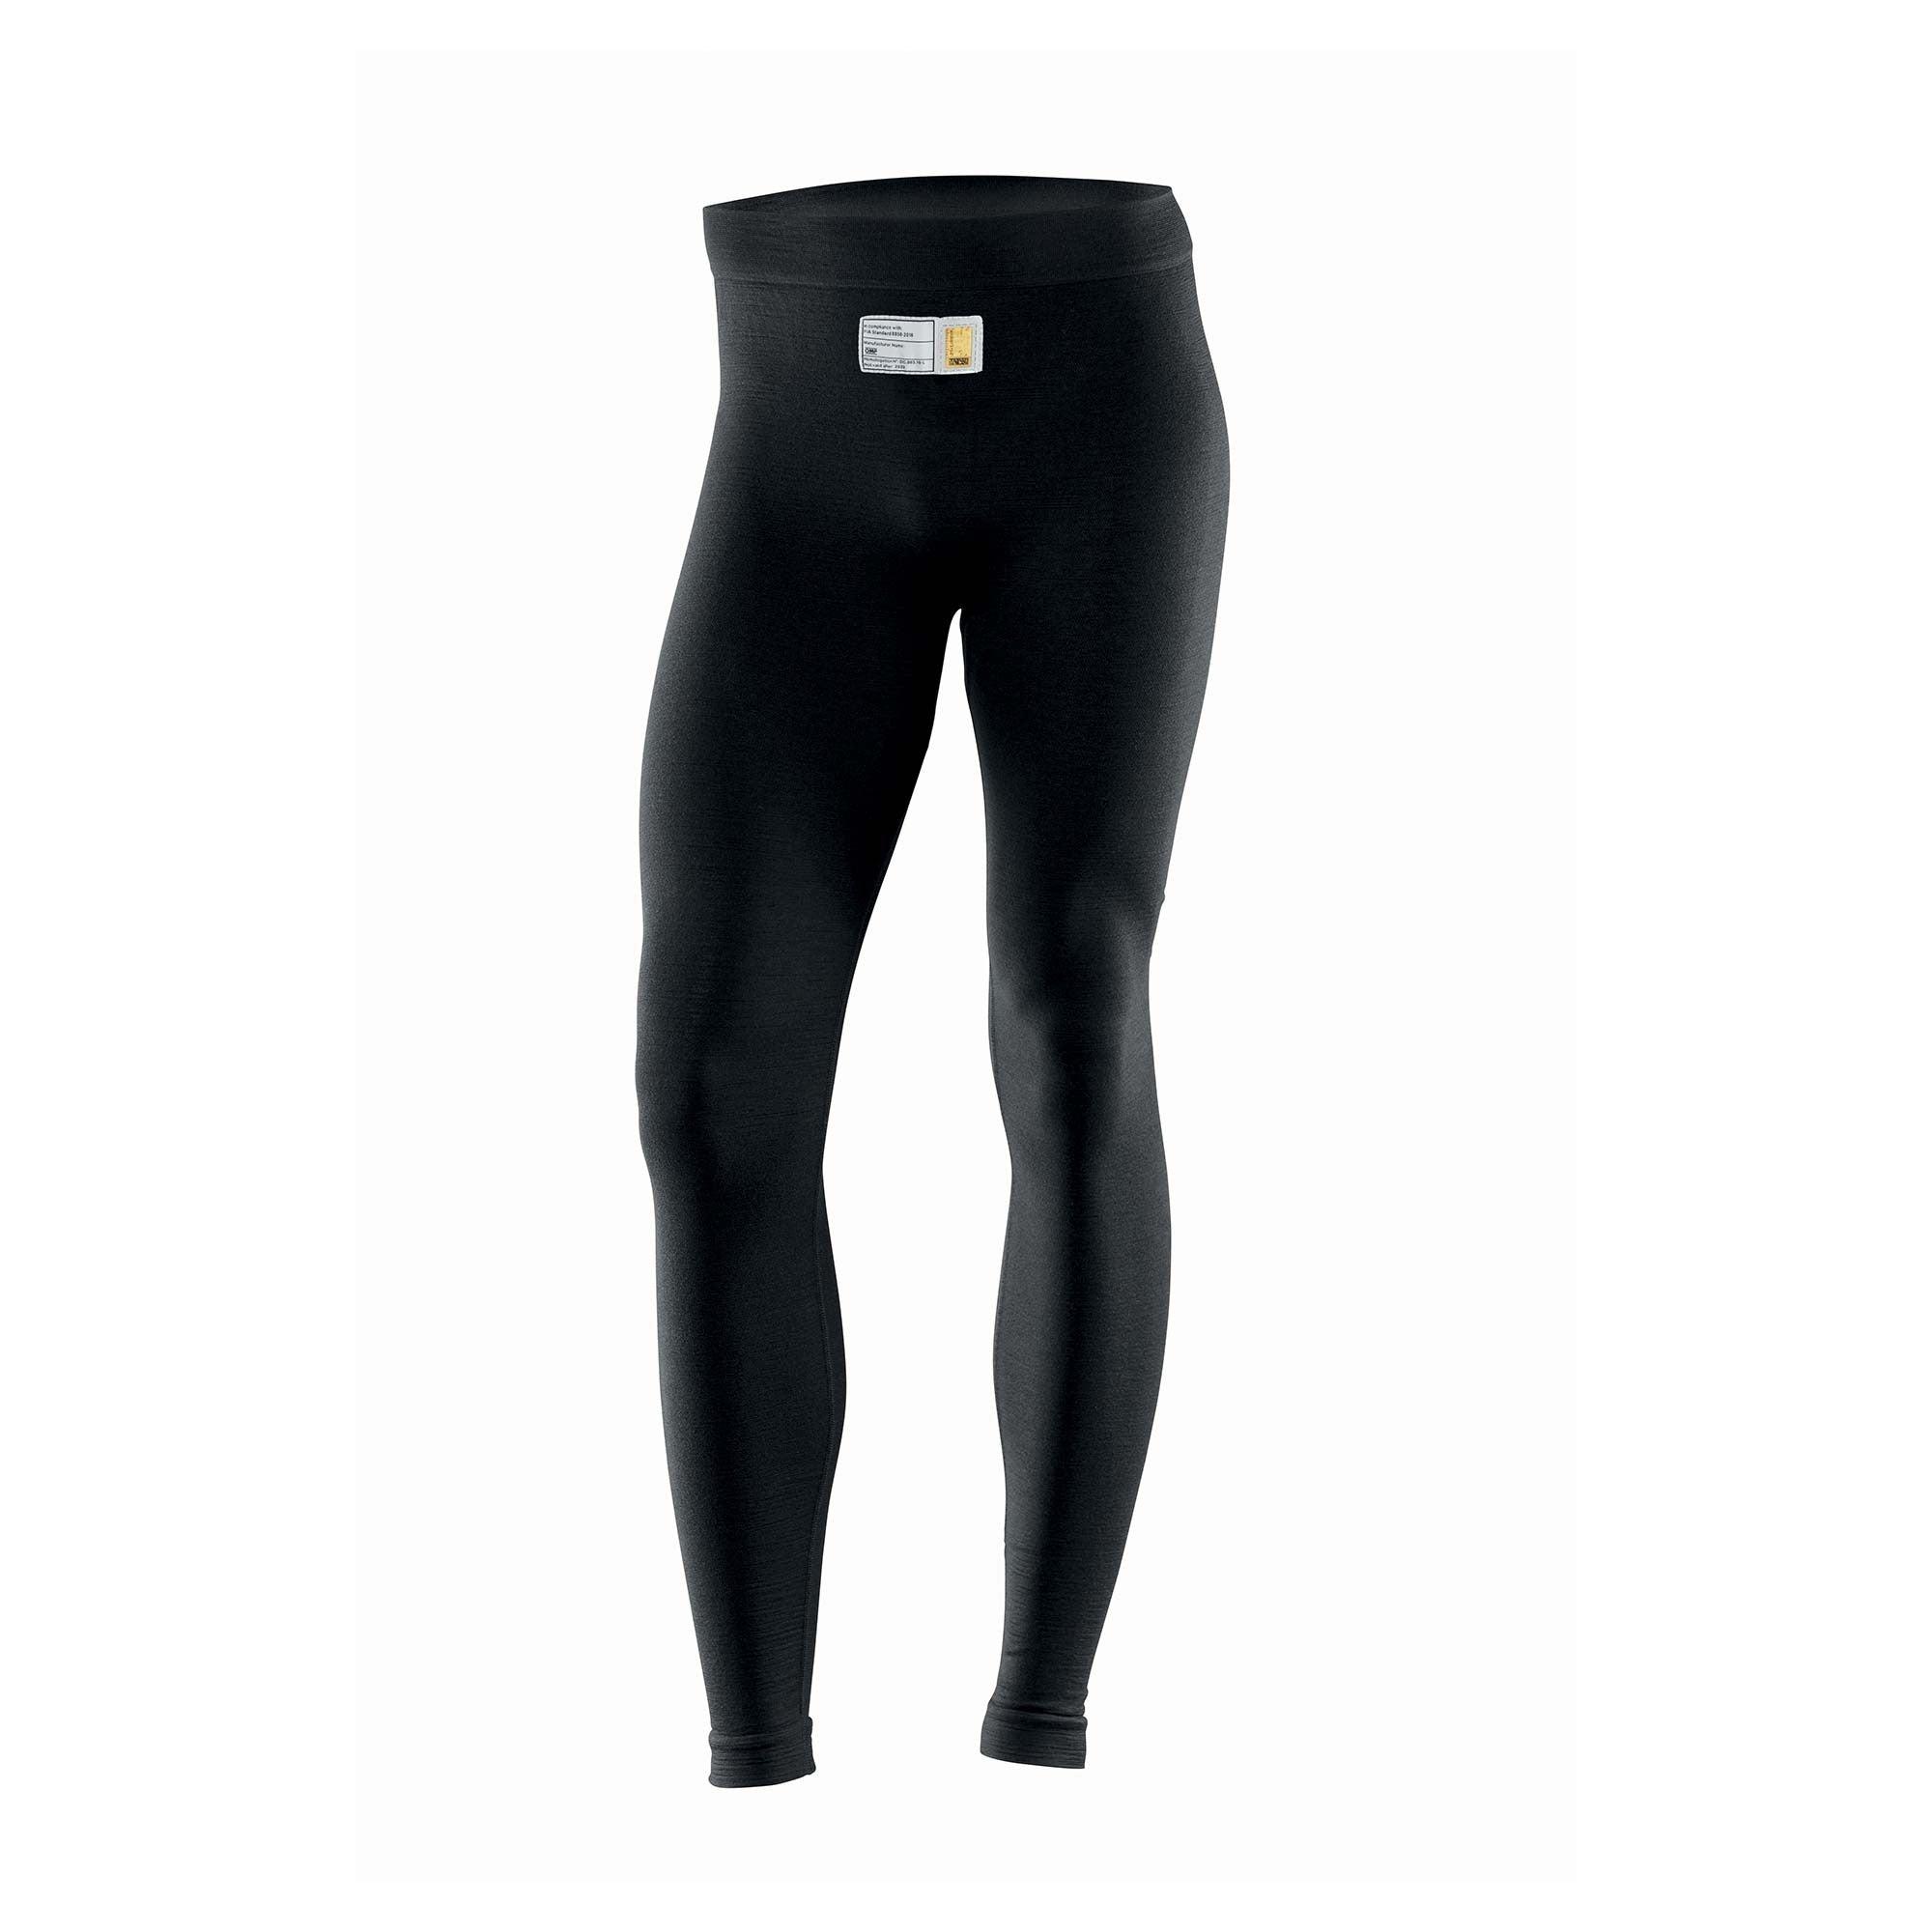 OMP IE0-0796-A01-071-XSS TECNICA EVO Pants underwear, FIA 8856-2018, black, size XS/S Photo-0 